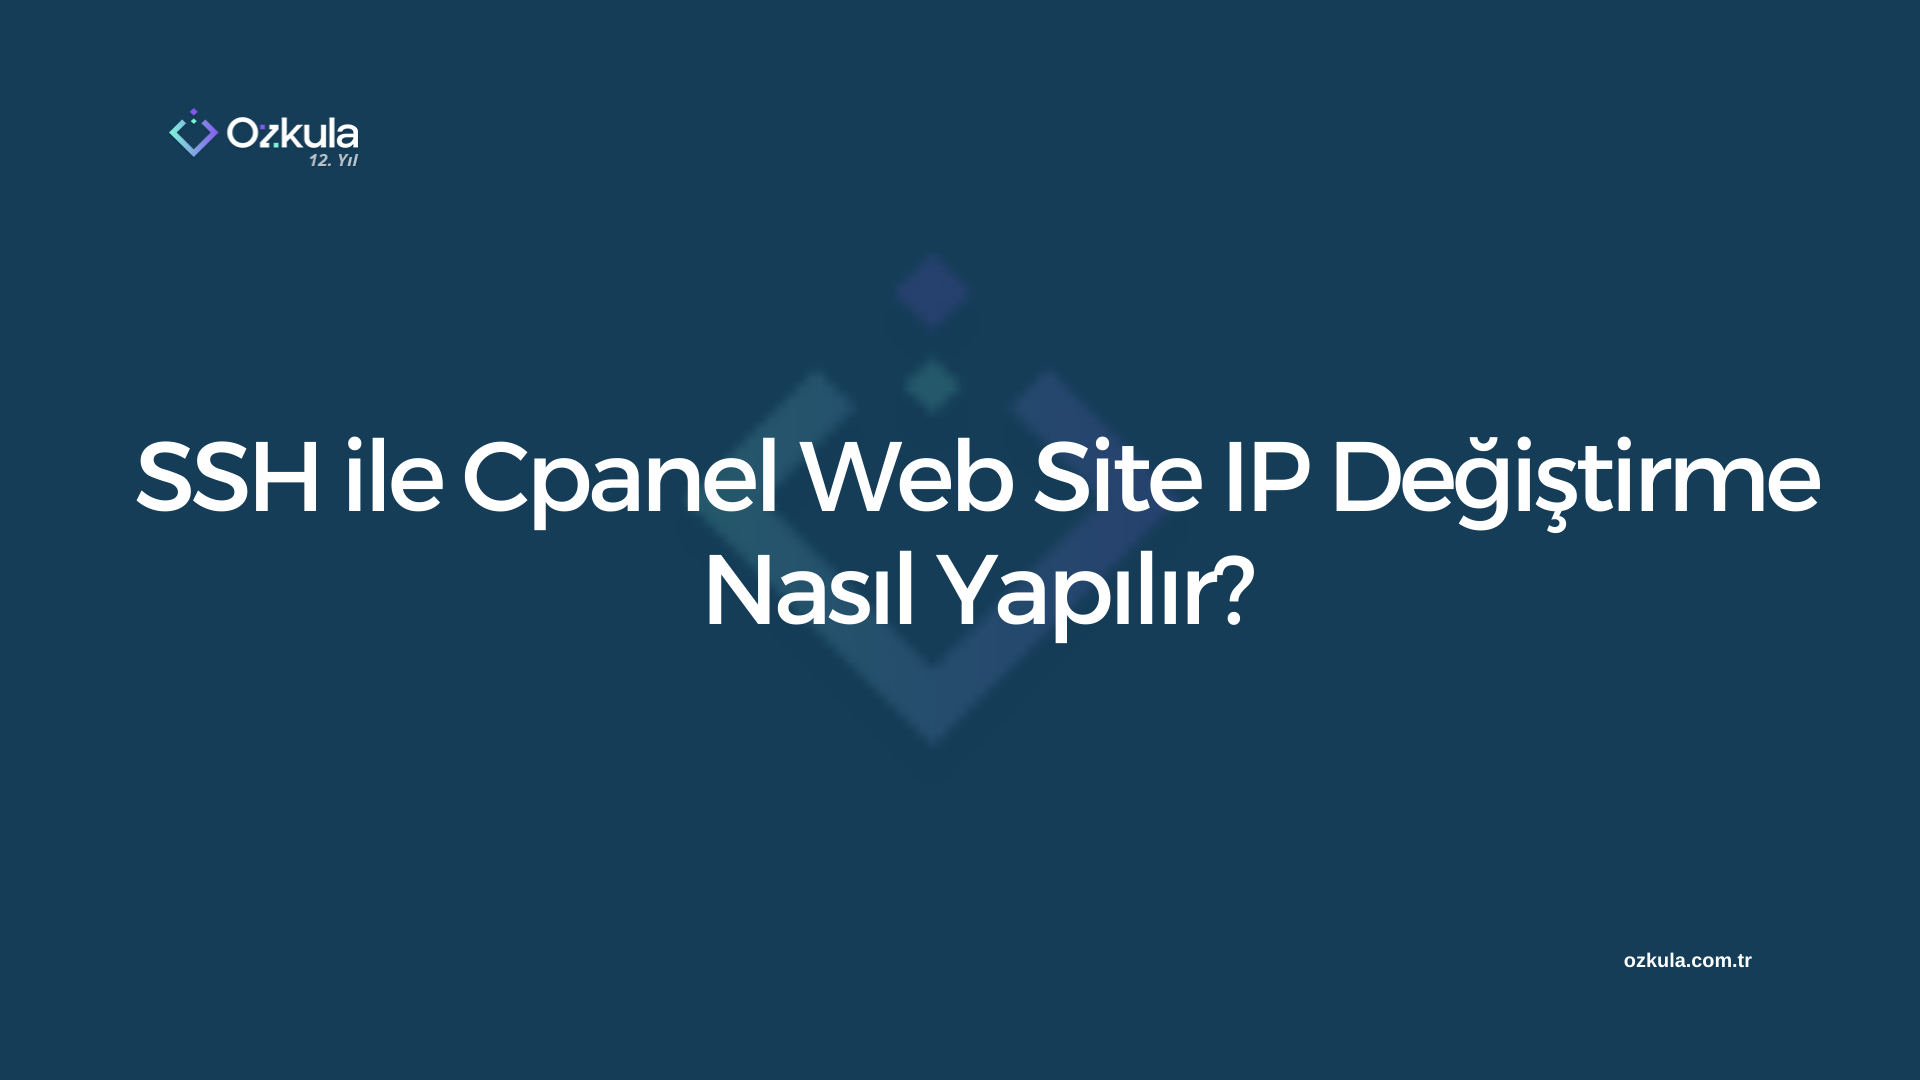 SSH ile Cpanel Web Site IP Değiştirme Nasıl Yapılır?